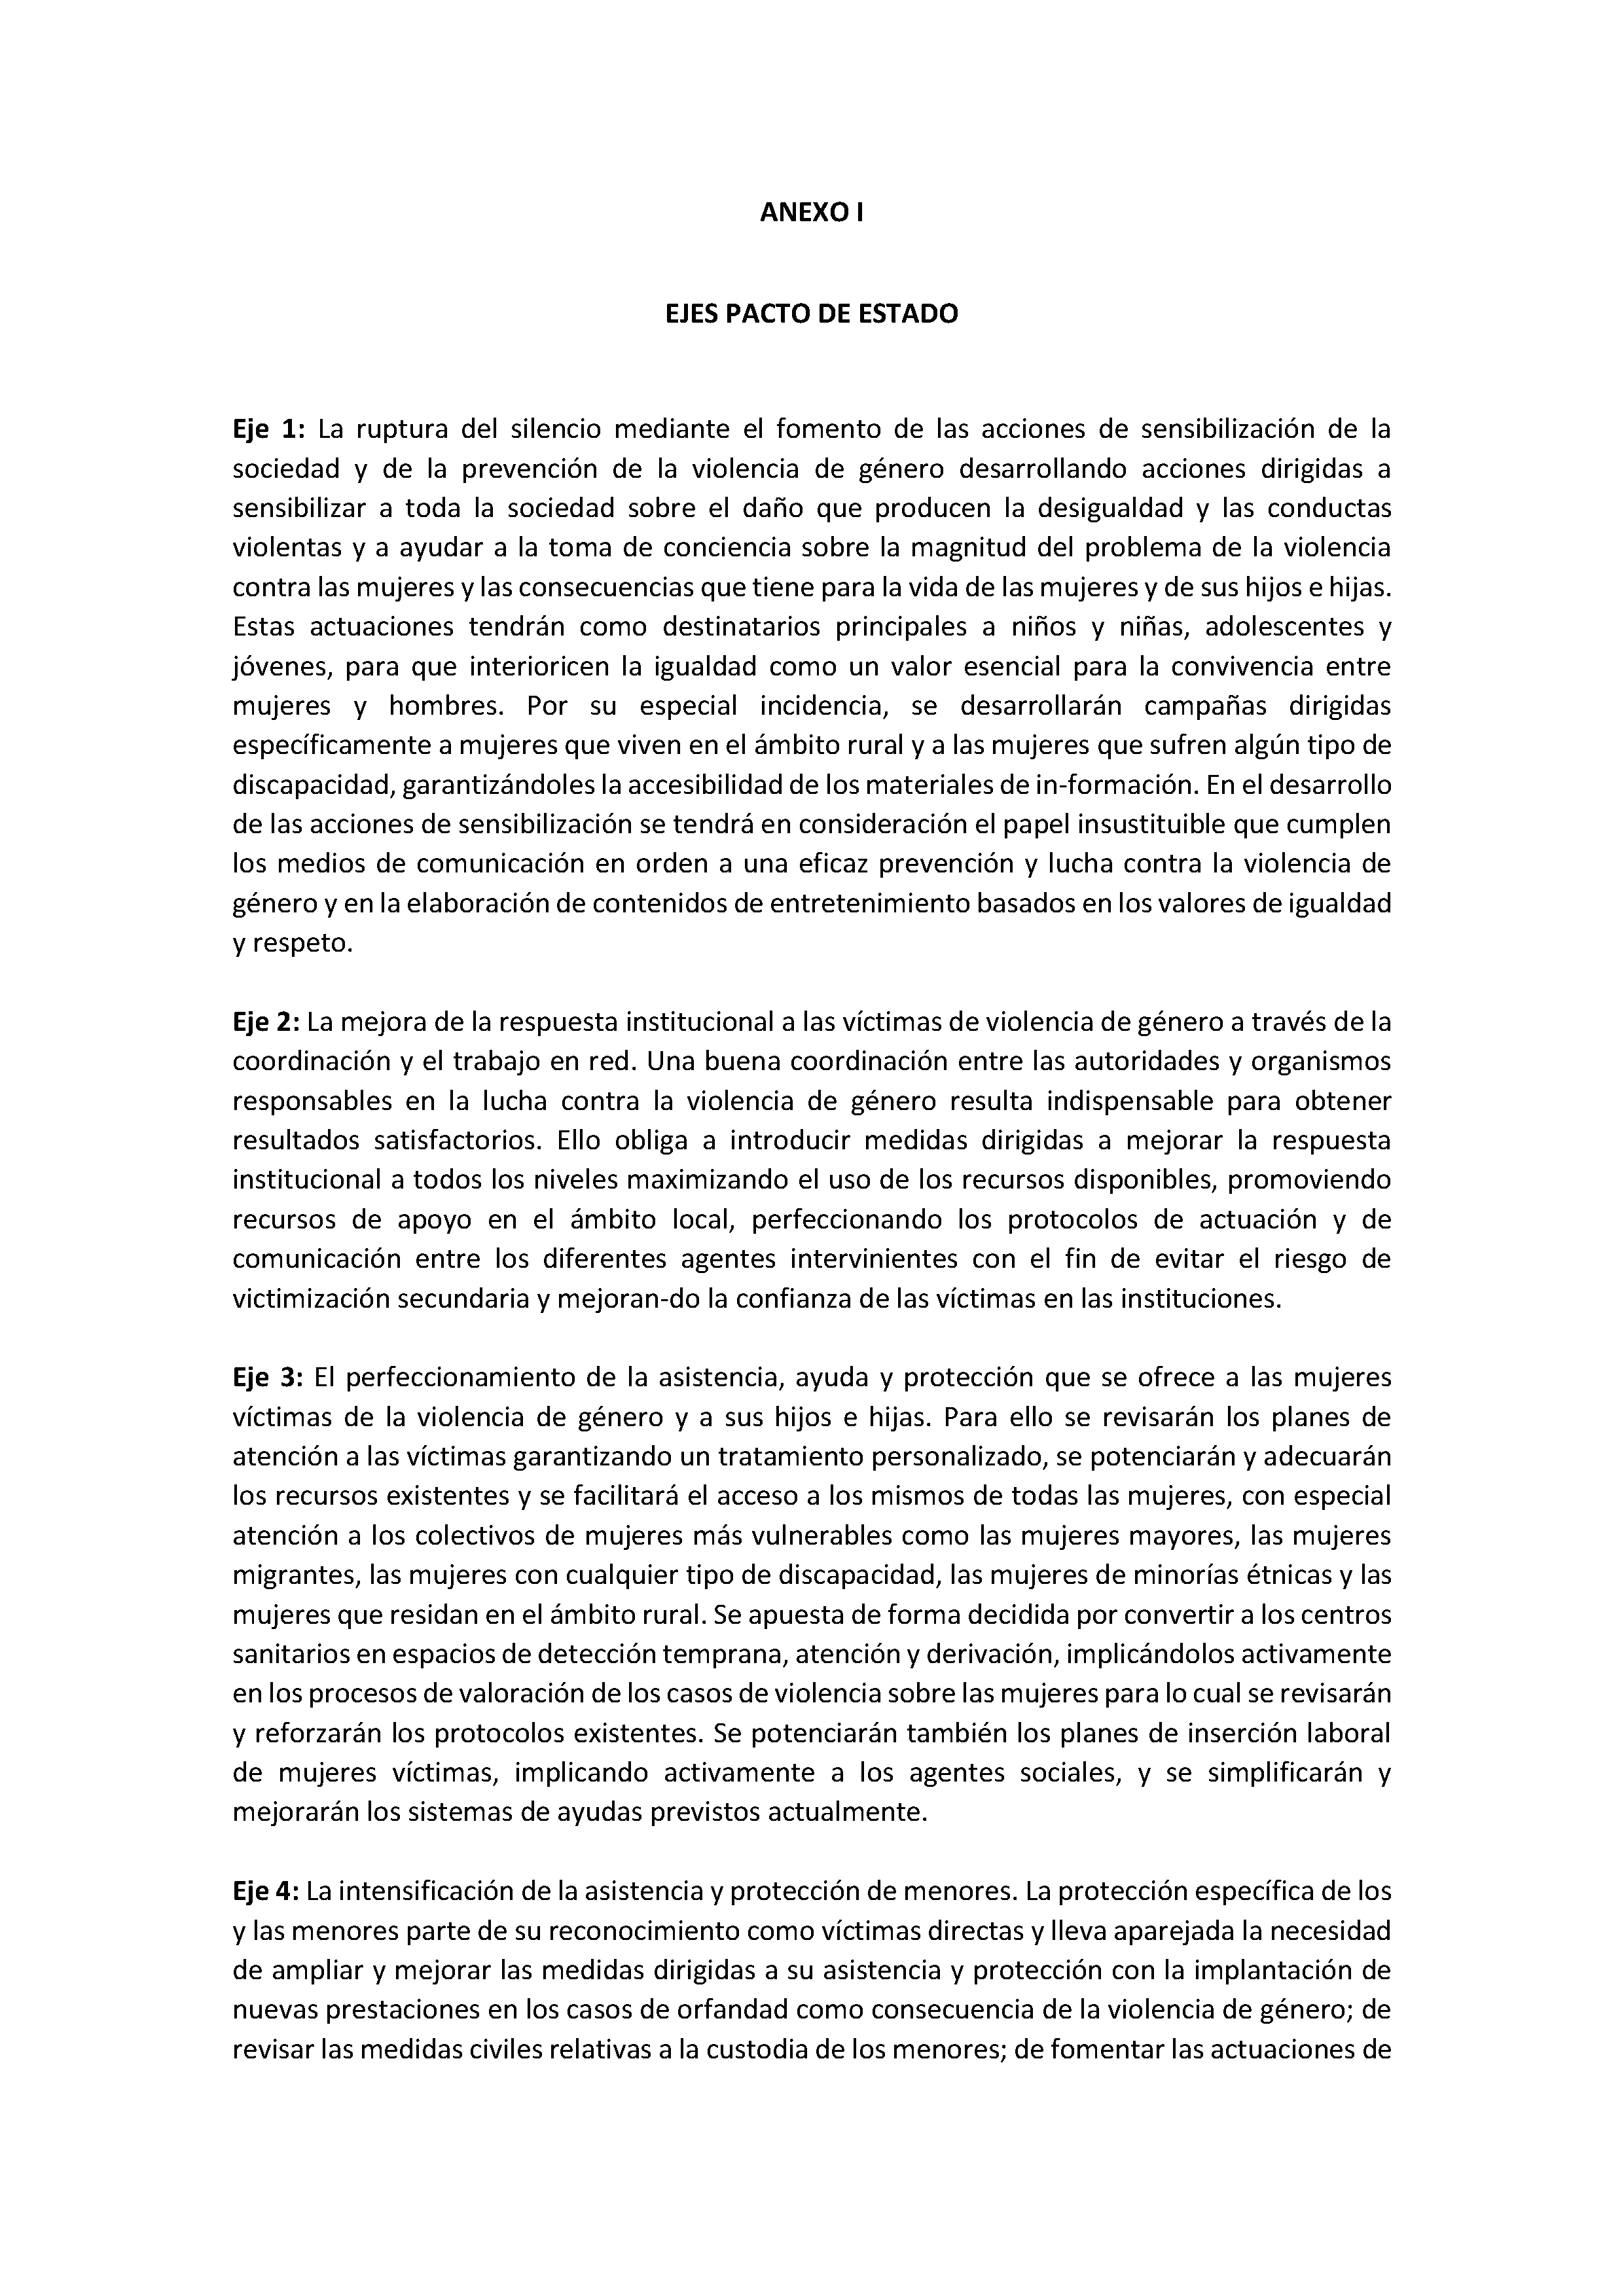 ANEXO I. EJES PACTO DE ESTADO Pag 1